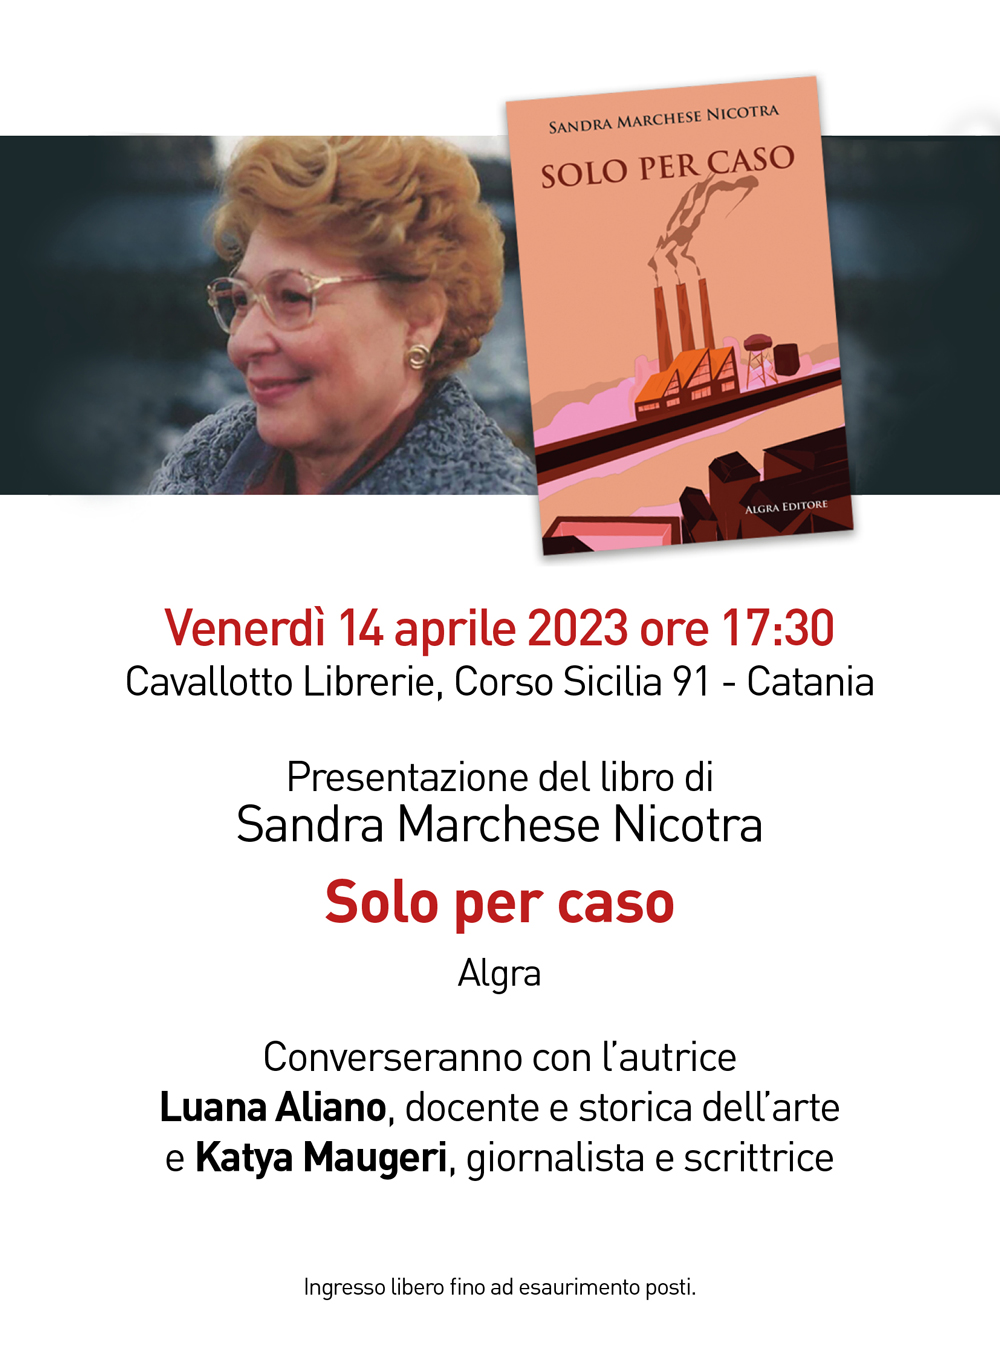 Presentazione del libro di Sandra Marchese Nicotra “Solo per caso”, Algra Editore.